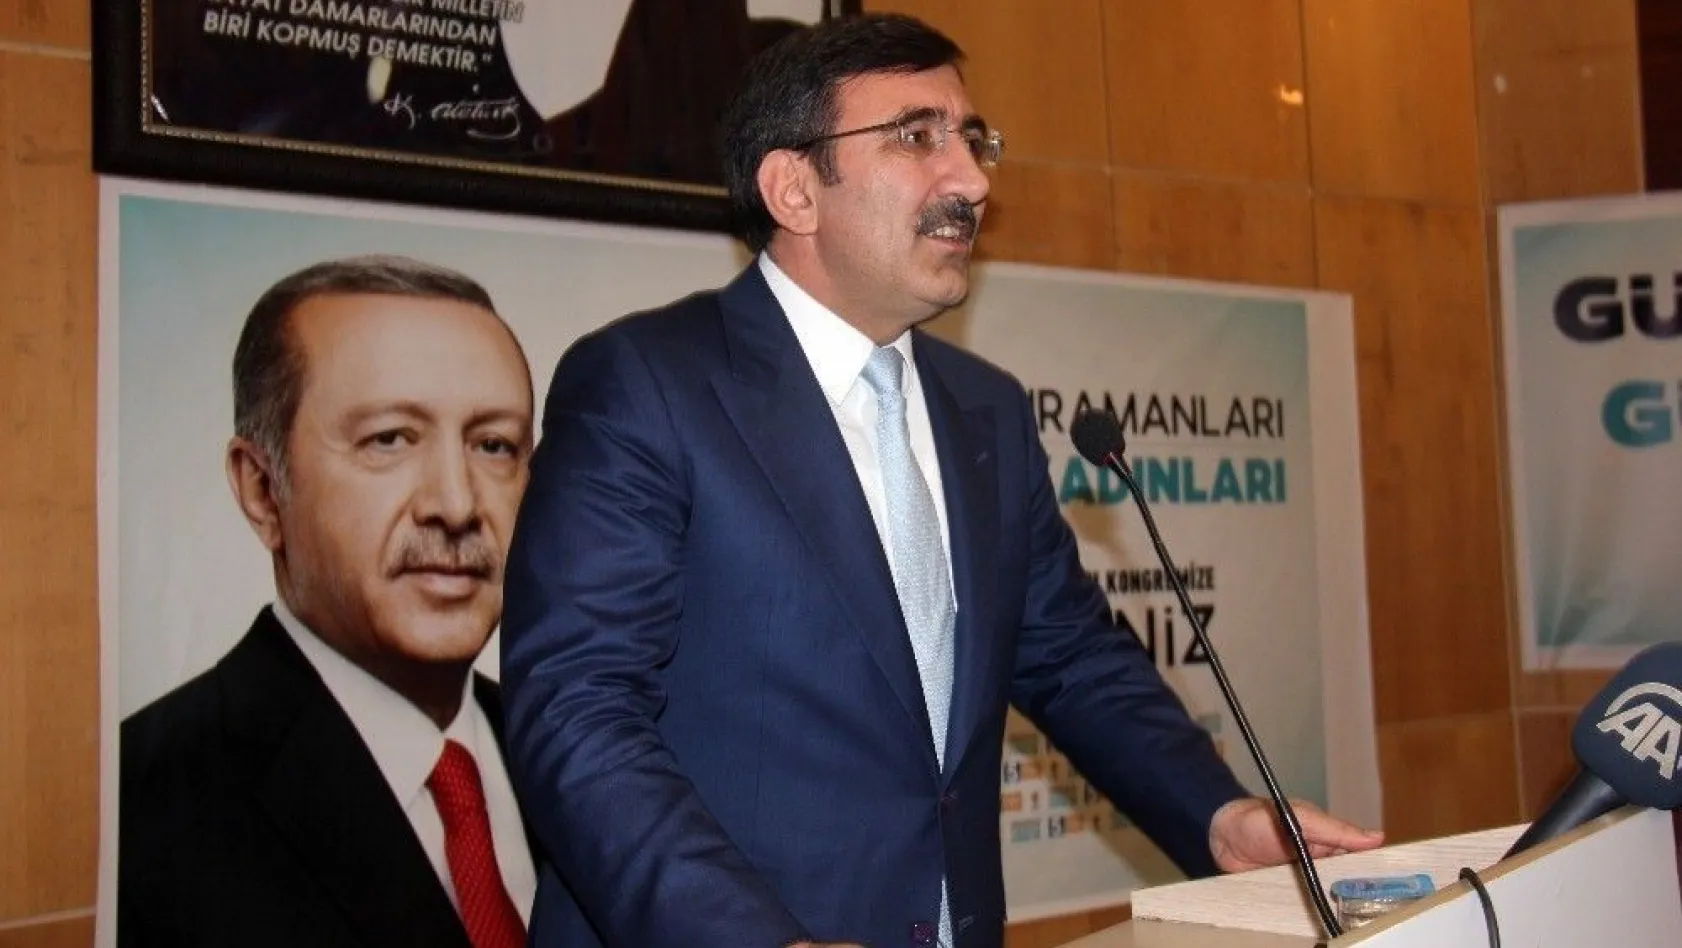 AK Partili Yılmaz: 'Ana muhalefet partisinin genel başkanı aday olmaya cesaret edemiyor'
